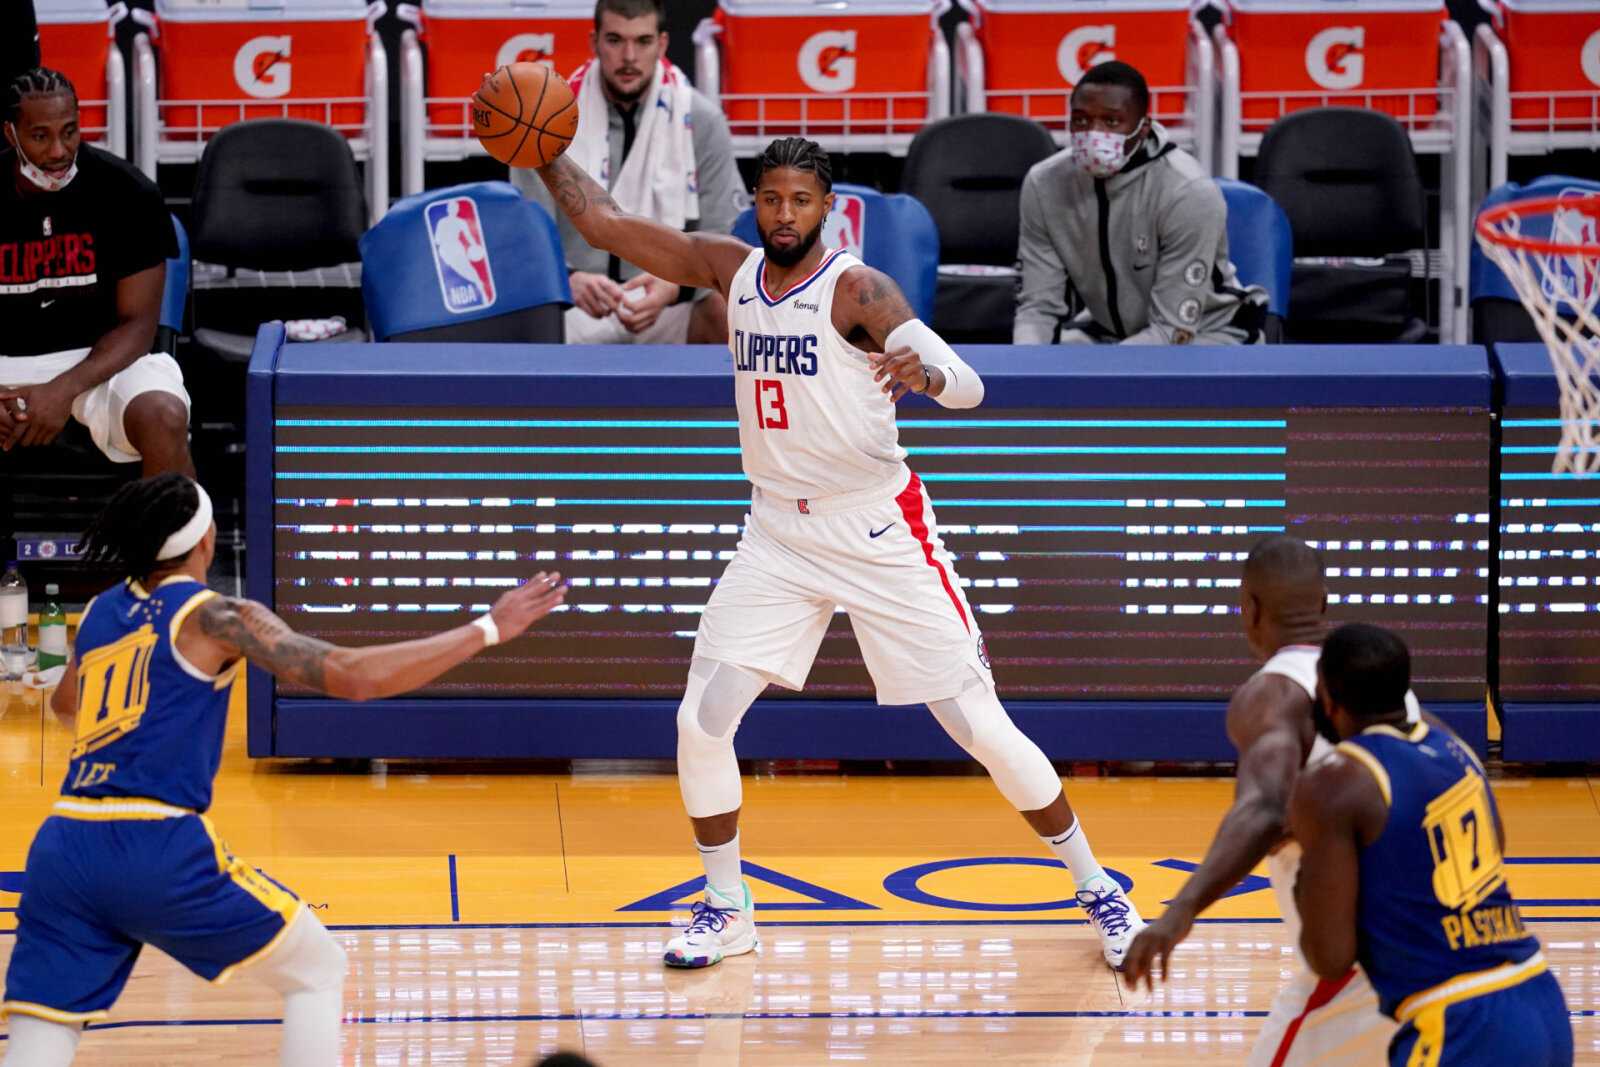 `` Ils peuvent faire le gazouillis '' - Paul George de Clippers, imperturbable par l'altercation verbale des Phoenix Suns